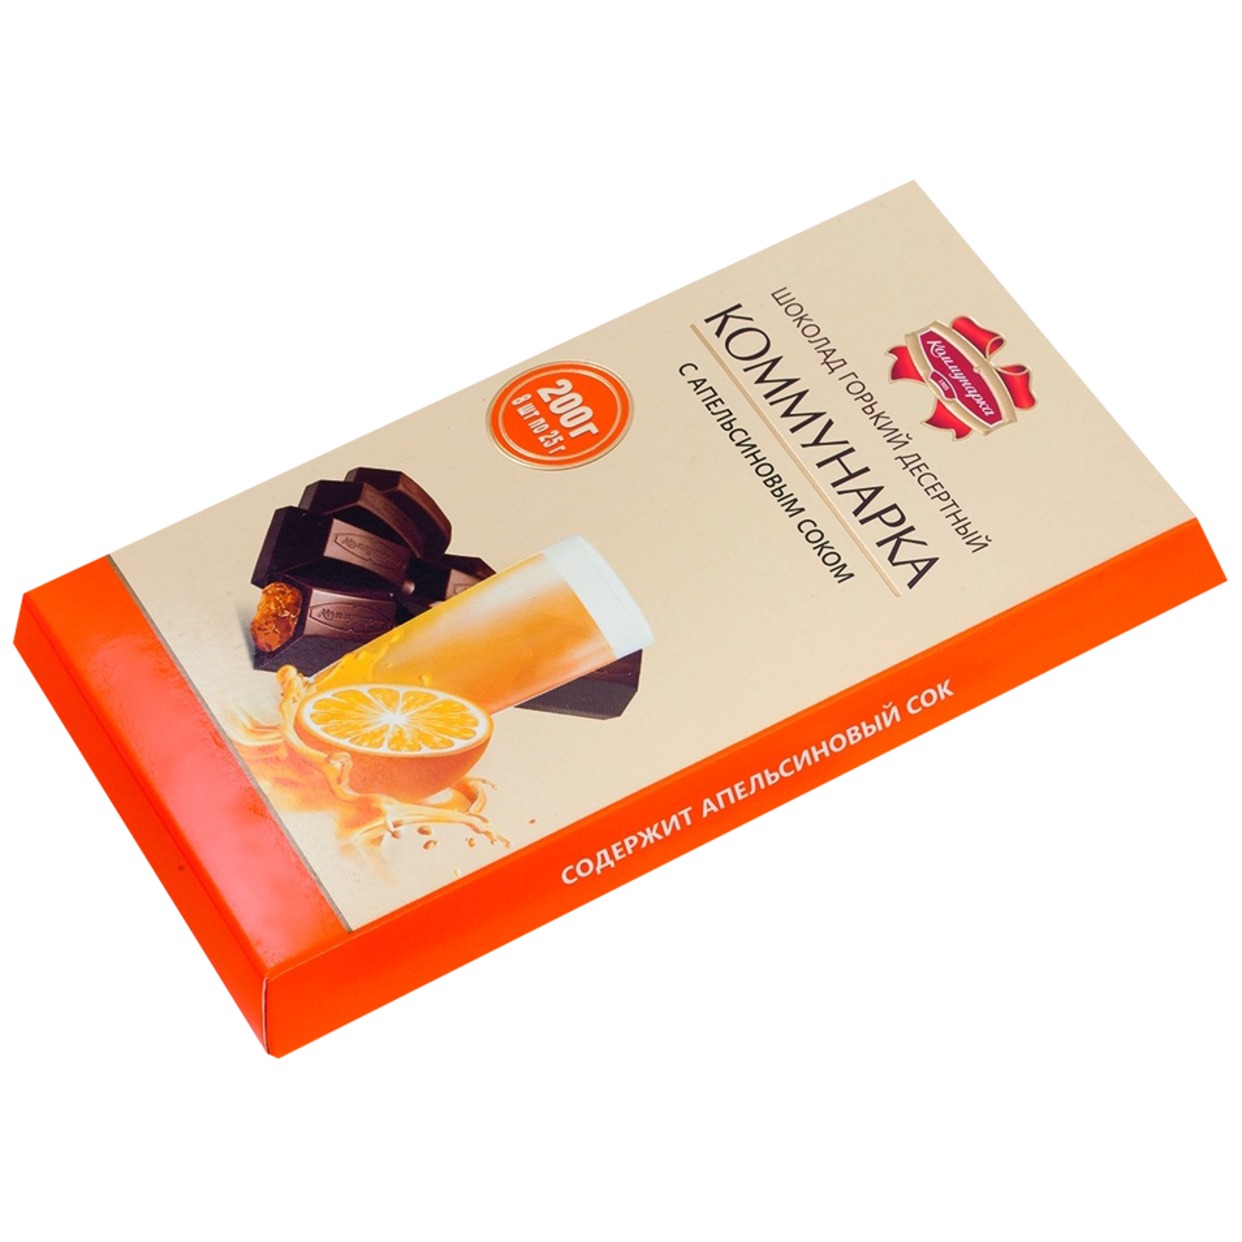 Шоколад Коммунарка, горький с апельсином, 200 г